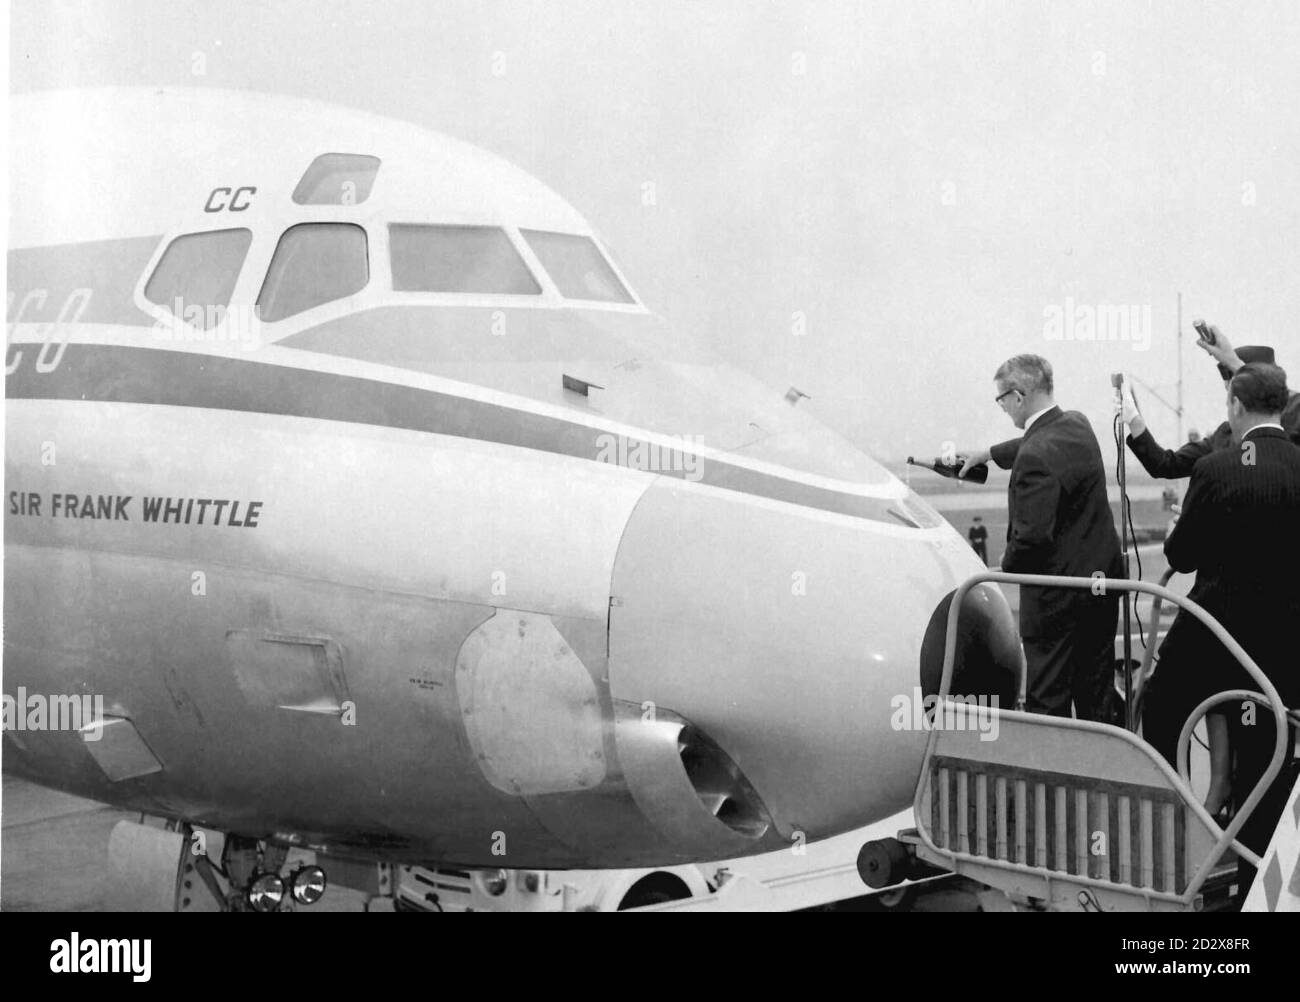 Sir Frank Whittle, il pioniere dei motori a reazione, versando una bottiglia di champagne sul naso mentre si batte un aereo di linea DC-8 che prende il nome da sé all'aeroporto di Londra. * Sir Frank è morto all'età di 89 anni, fonti di aviazione ha detto oggi (Venerdì). Vedi PA Story DEATH Whittle. DISPONIBILE SOLO IN BIANCO E NERO. Foto Stock